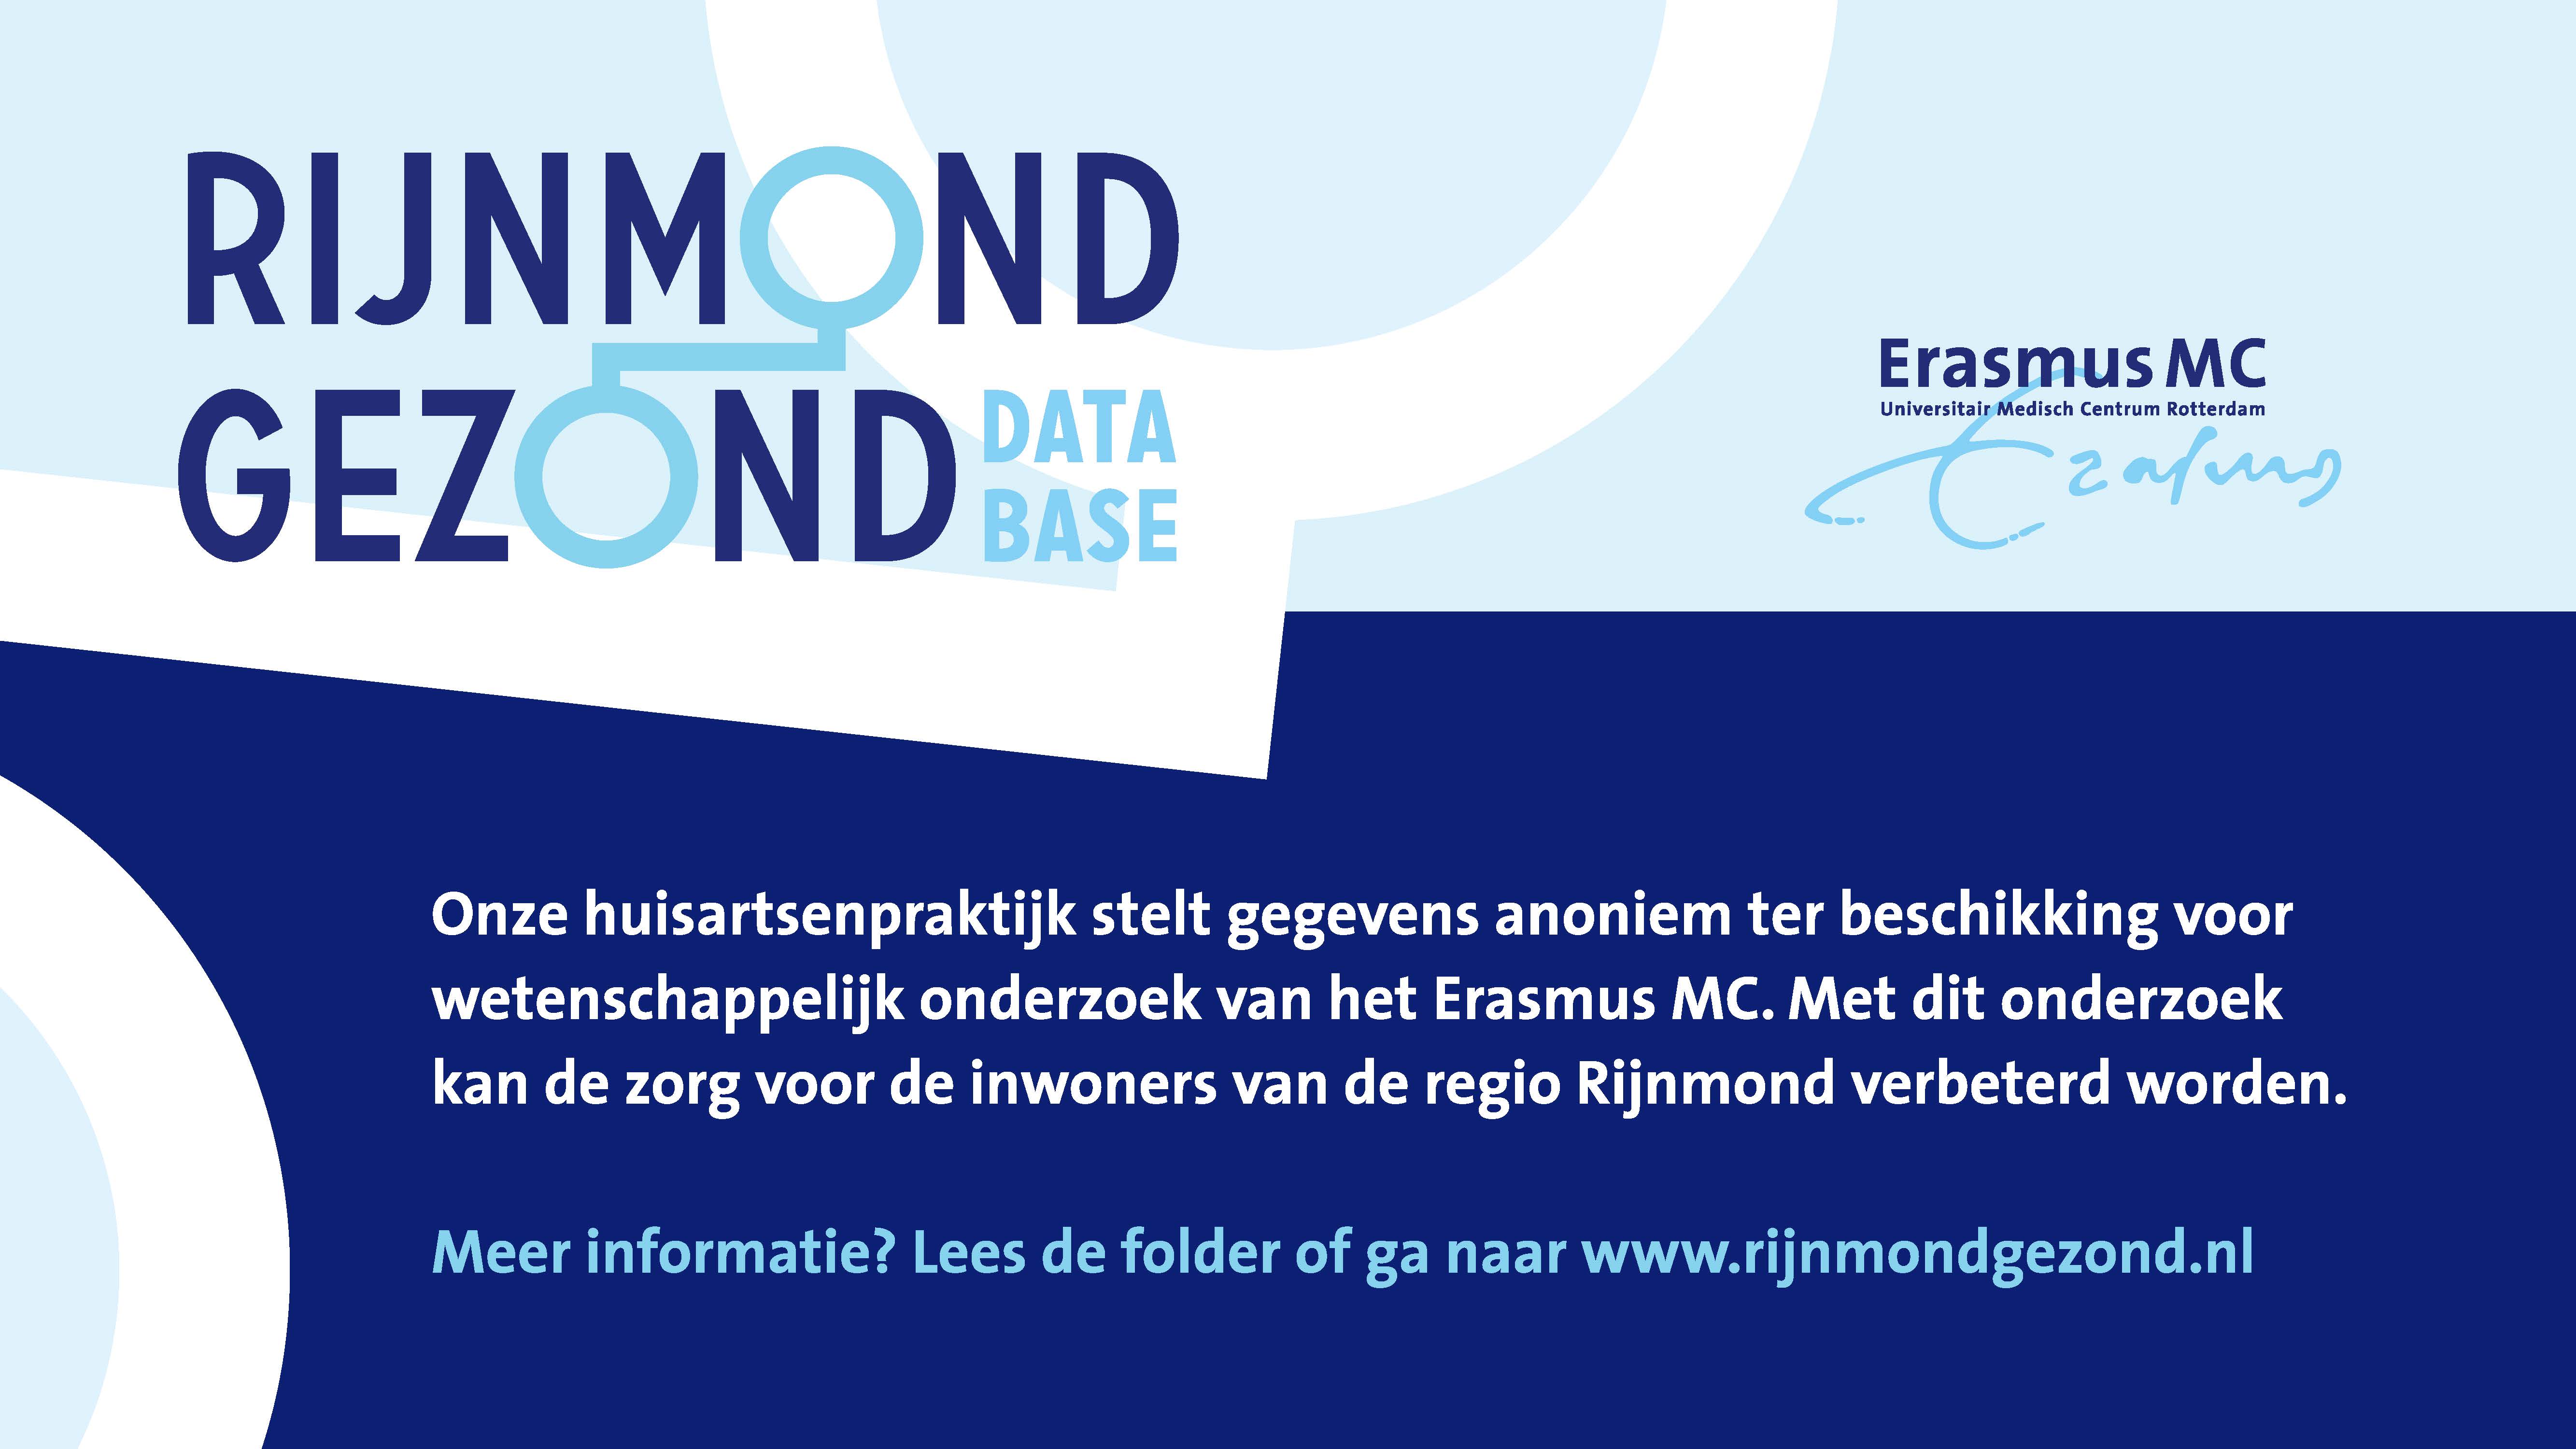 Rijnmond gezond database